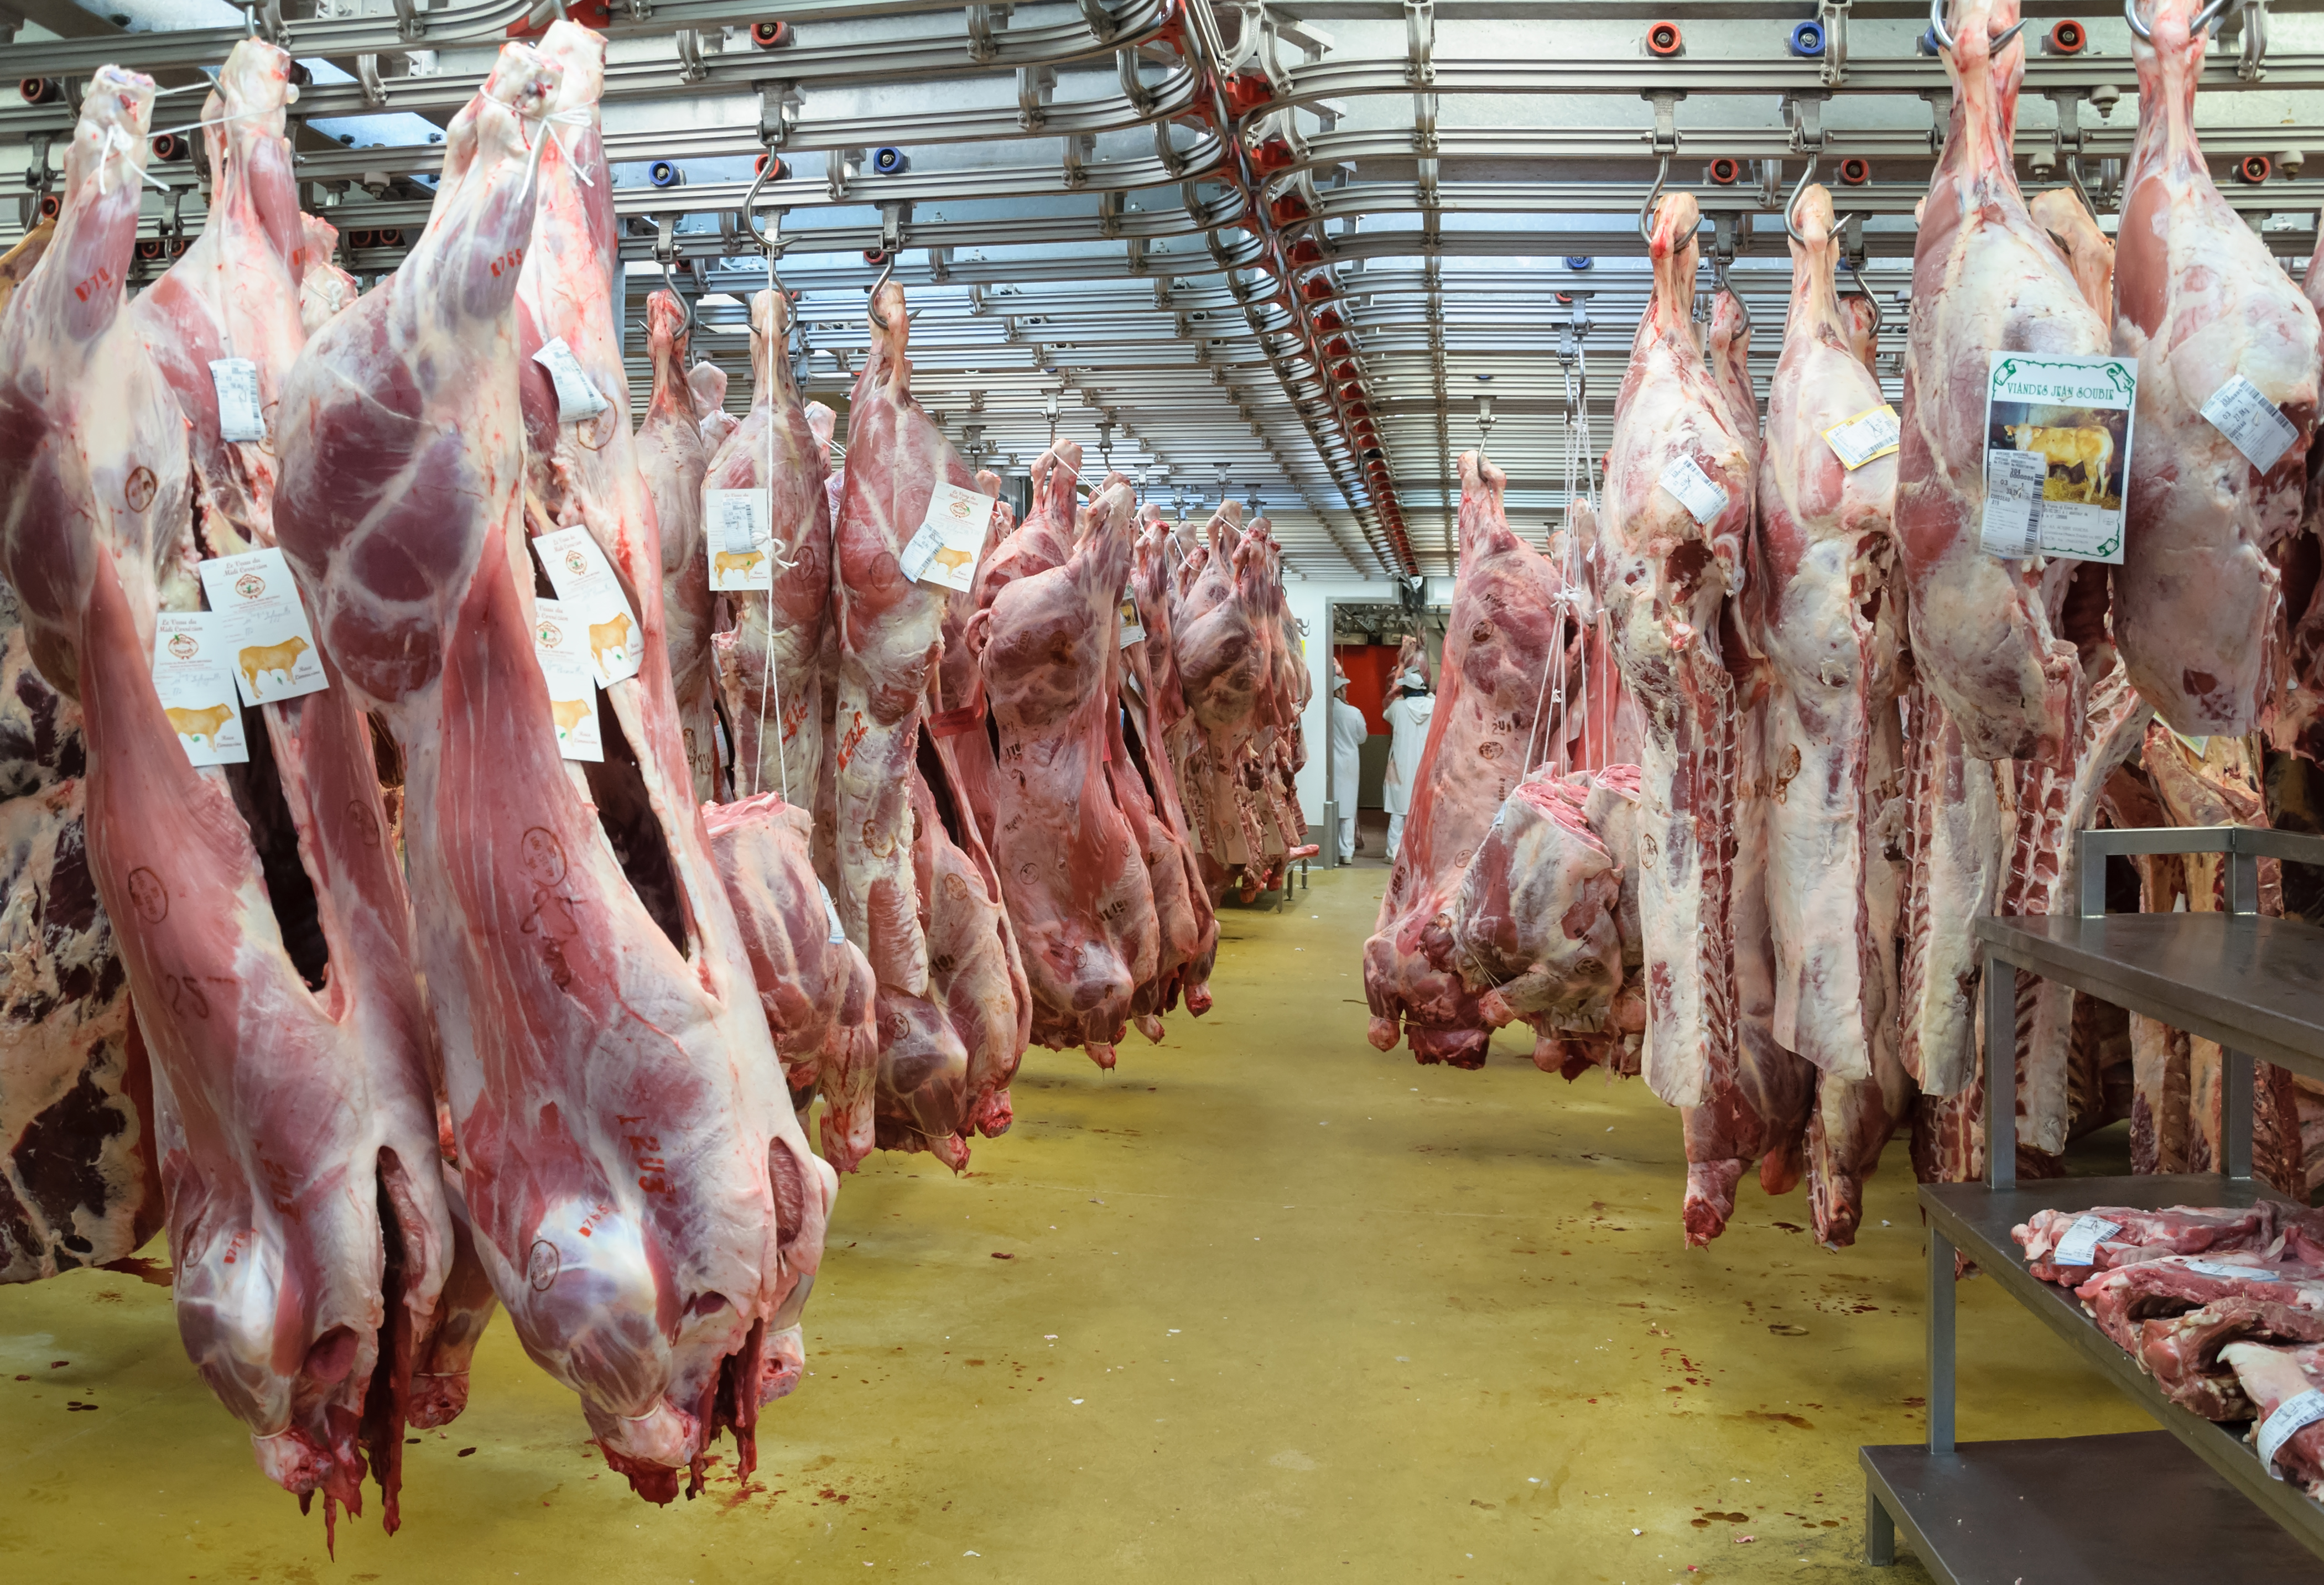 De acuerdo al Centro de Enfermedades Contagiosas (CDC por sus siglas en inglés) , más de 16,000 trabajadores en 239 plantas de carne se contagiaron de COVID-19 en los sexis primeros meses de 2020. De esta cifra más de la mitad de los/as trabajadores/as infectados/as son latinos/as. Foto cortesía de Wikipedia.